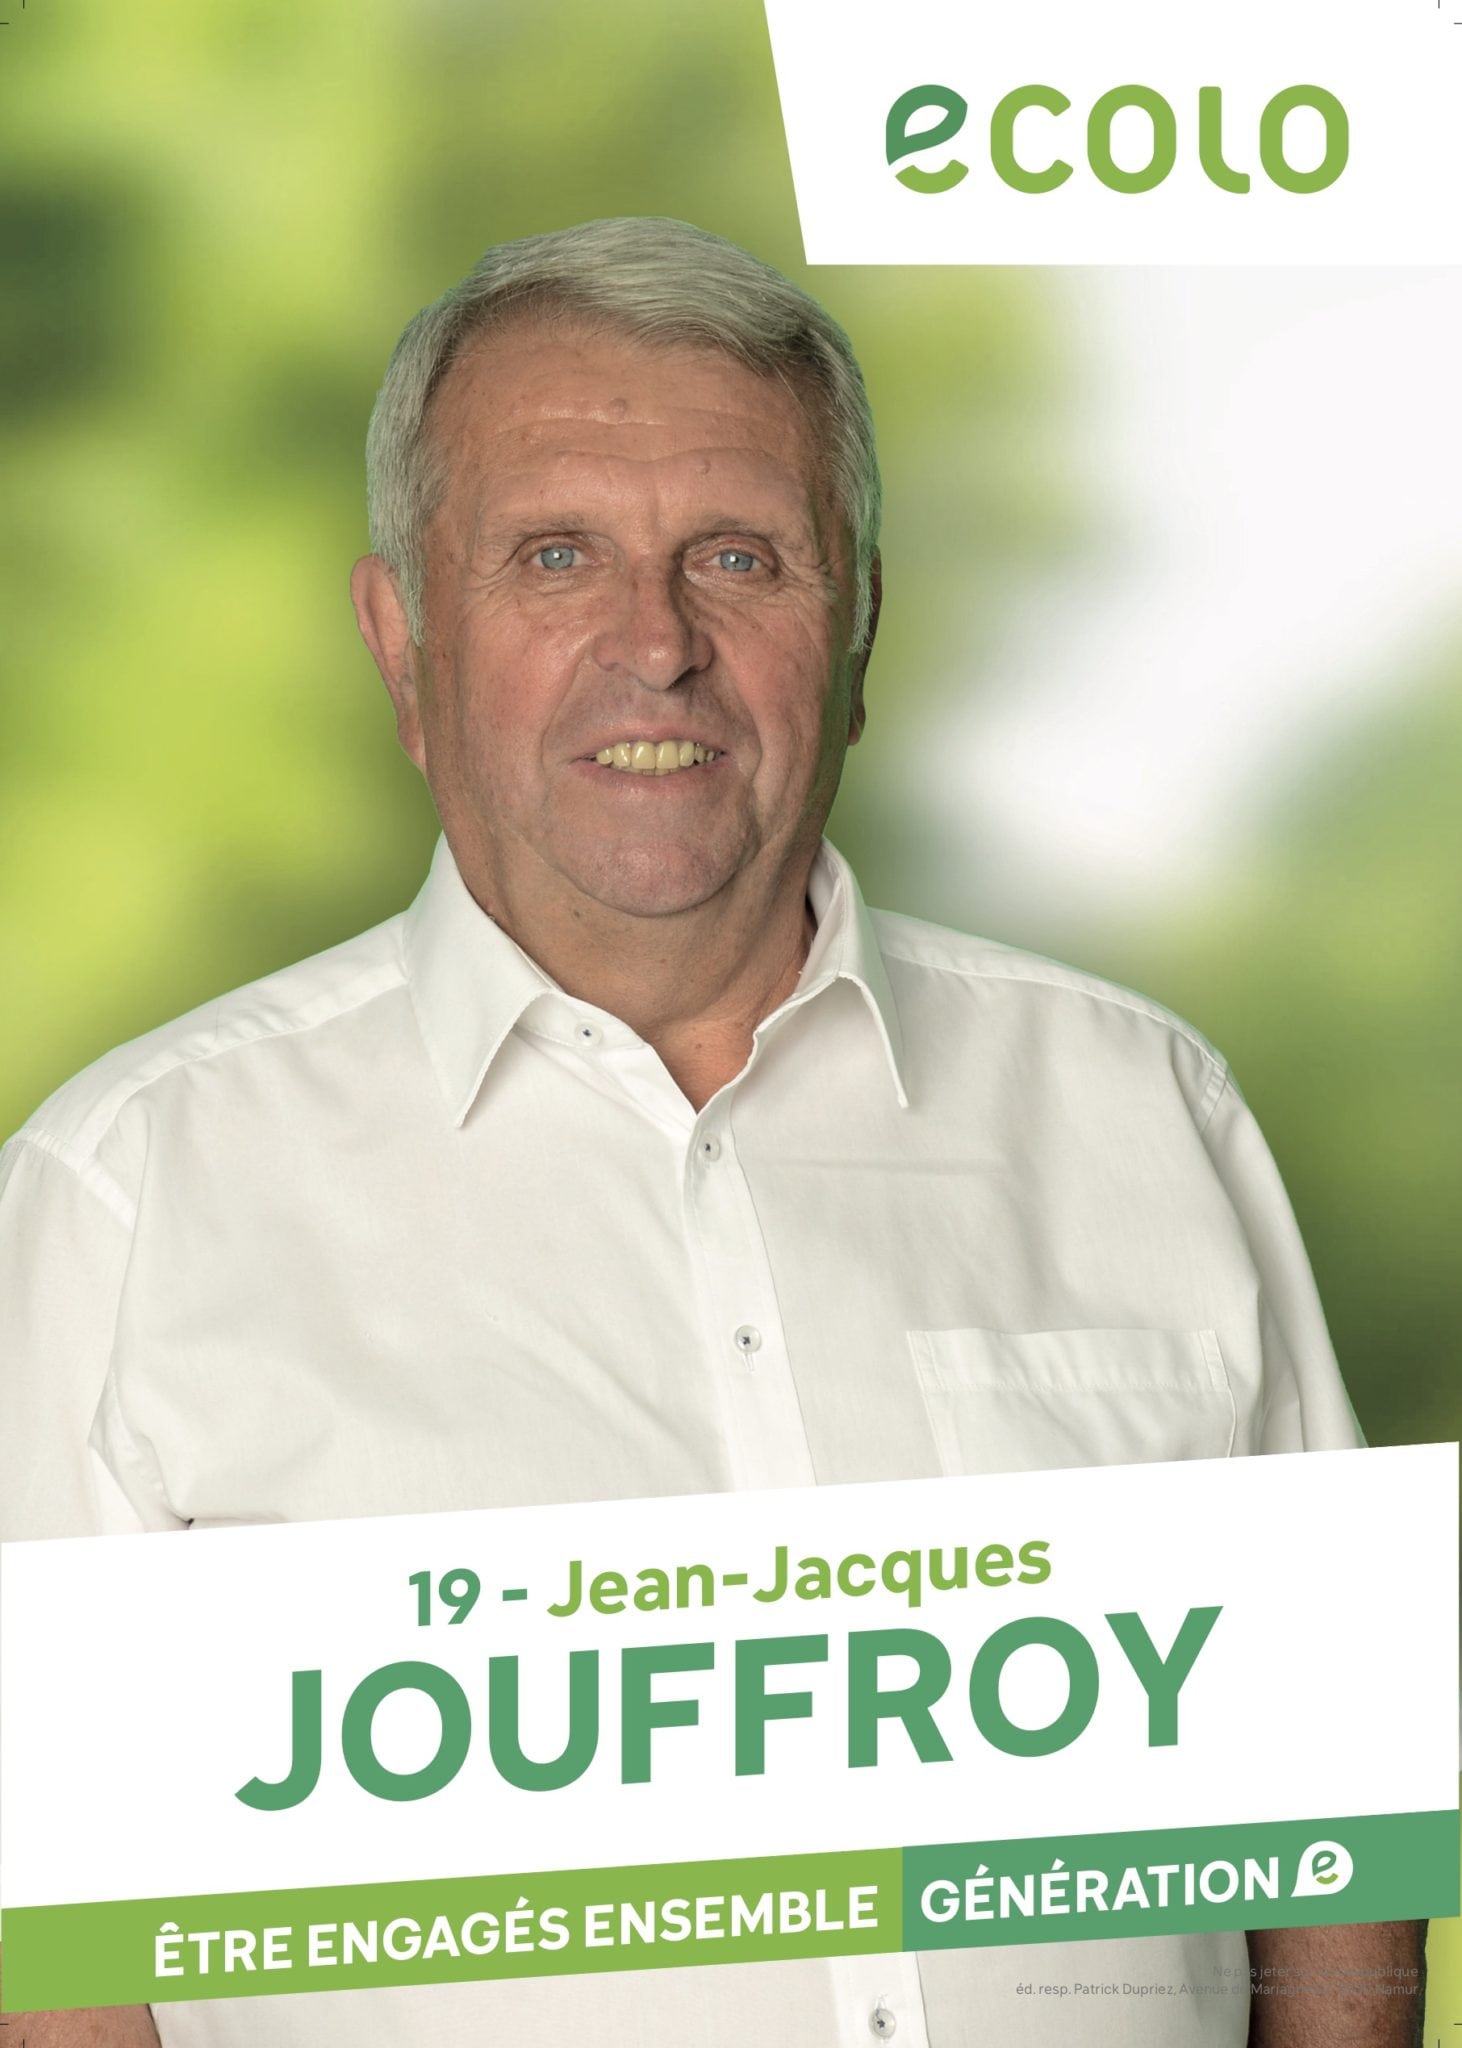 Jean-Jacques Jouffroy